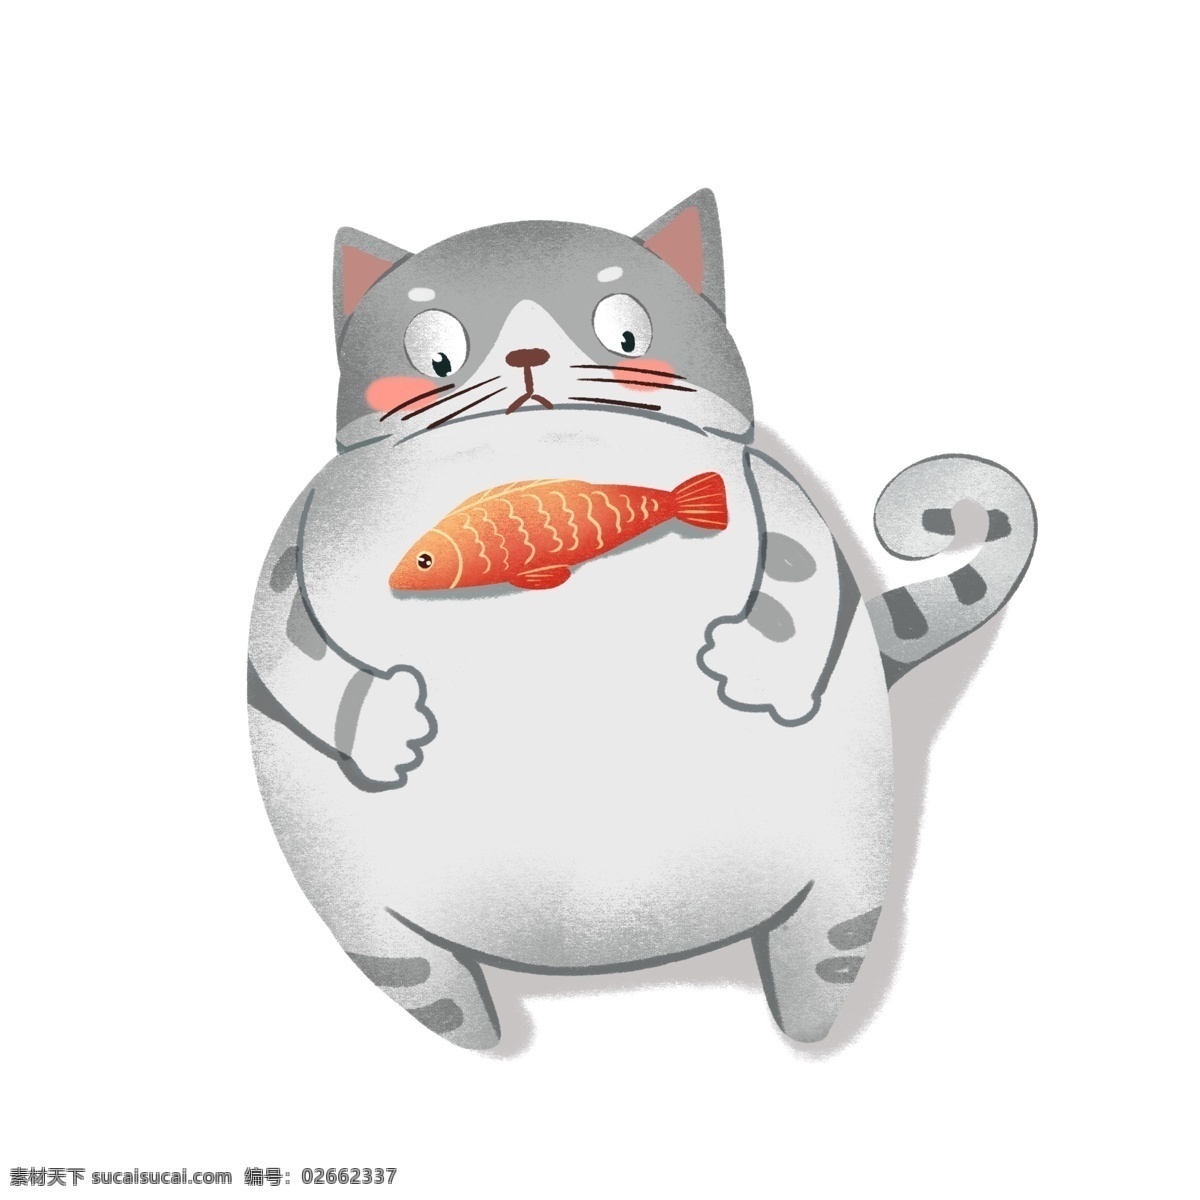 肥胖 可爱 动物 拟人化 猫咪 肥胖动物 可爱动物 动画插画 拟人动物 拟人 减肥 运动 健身 动物手绘